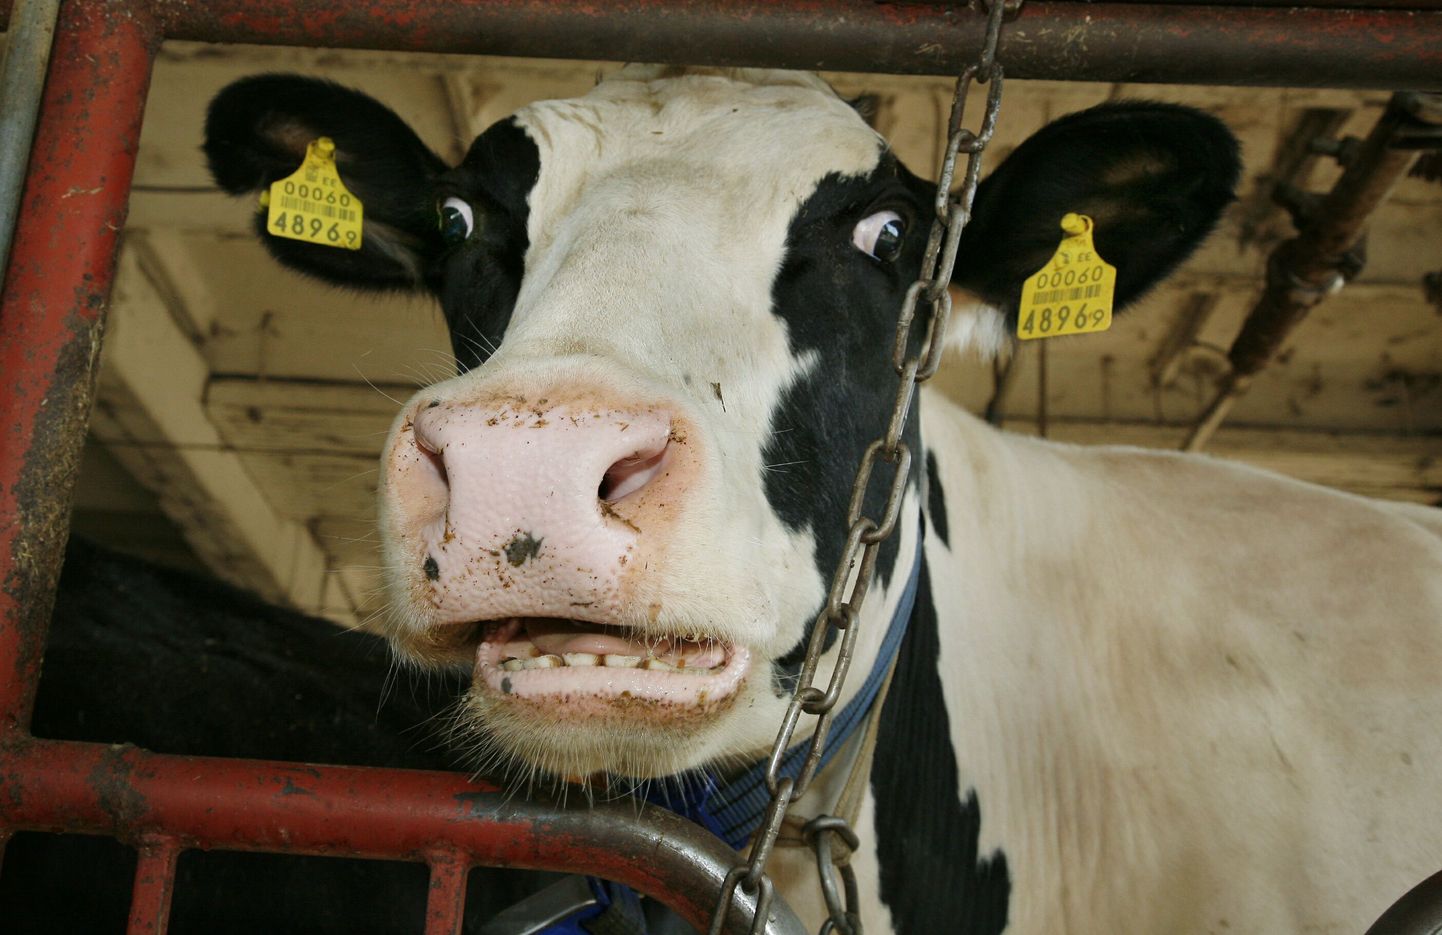 Pärnumaal Selja OÜ farmis elab 15 aastane leht Lali, kes on oma elu ajal andnud üle 100 tonni piima. Foto on illustratiivne.